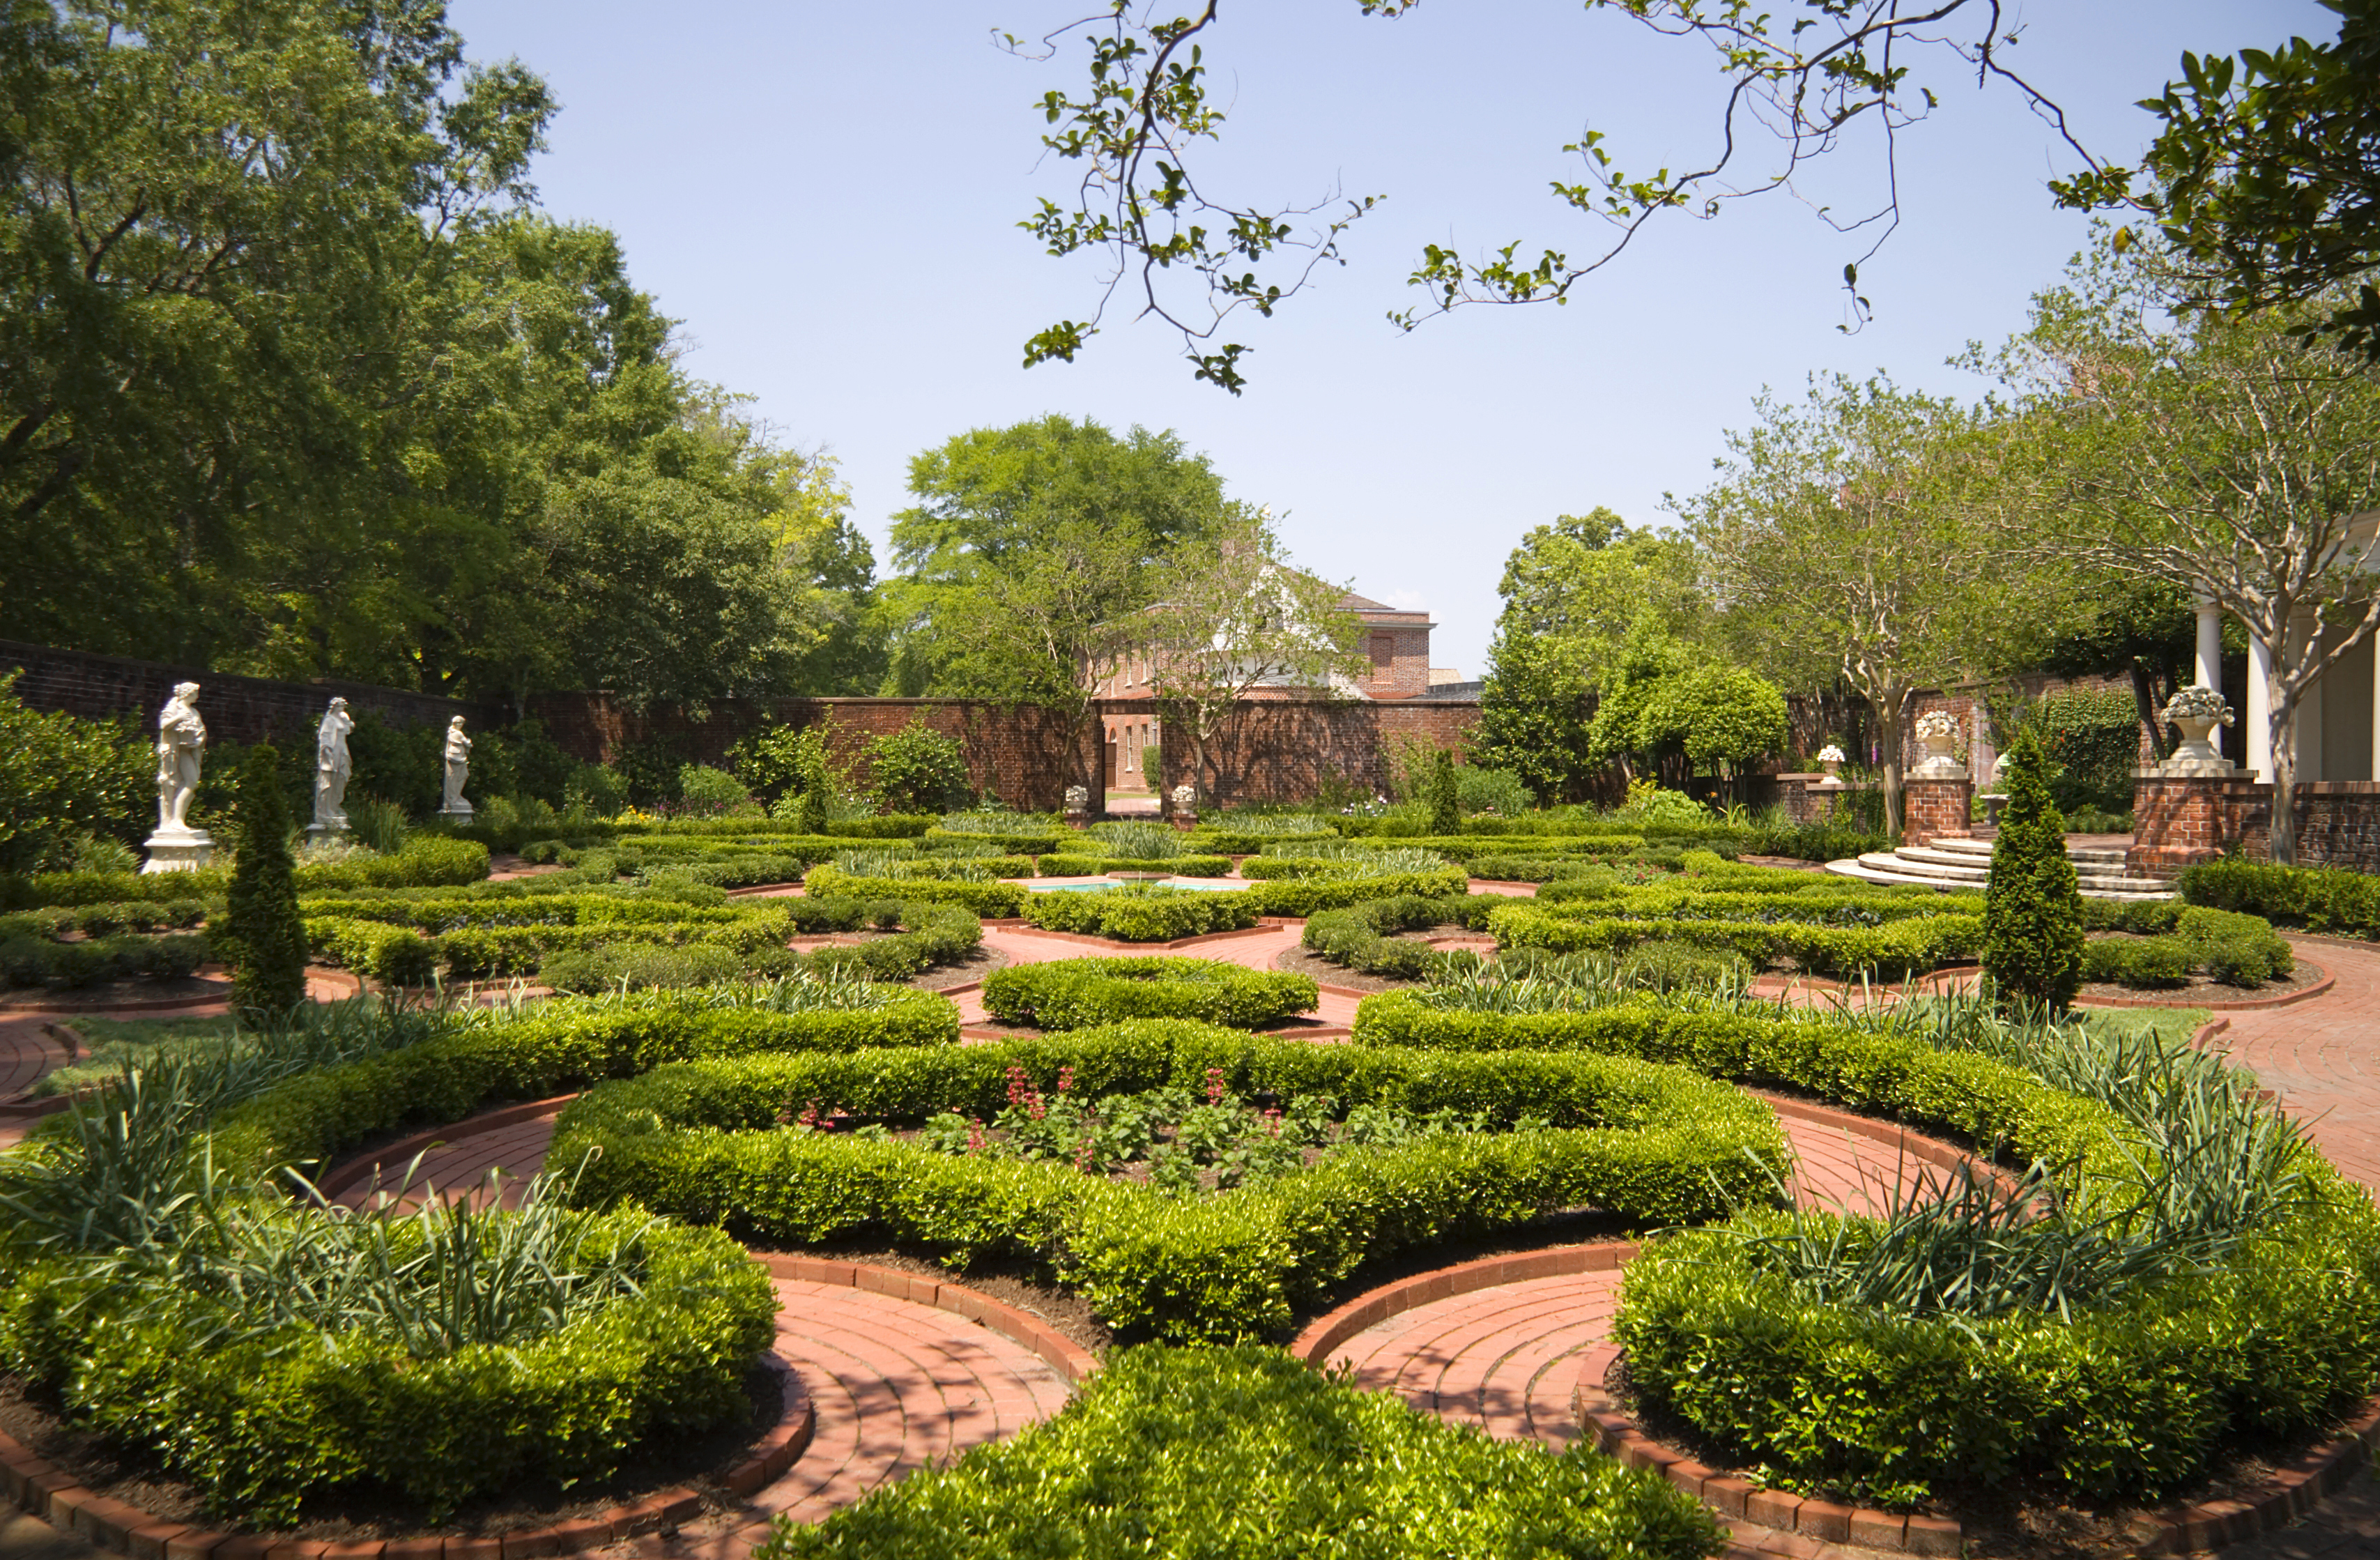 Gardens at Tyron Palace, North Carolina